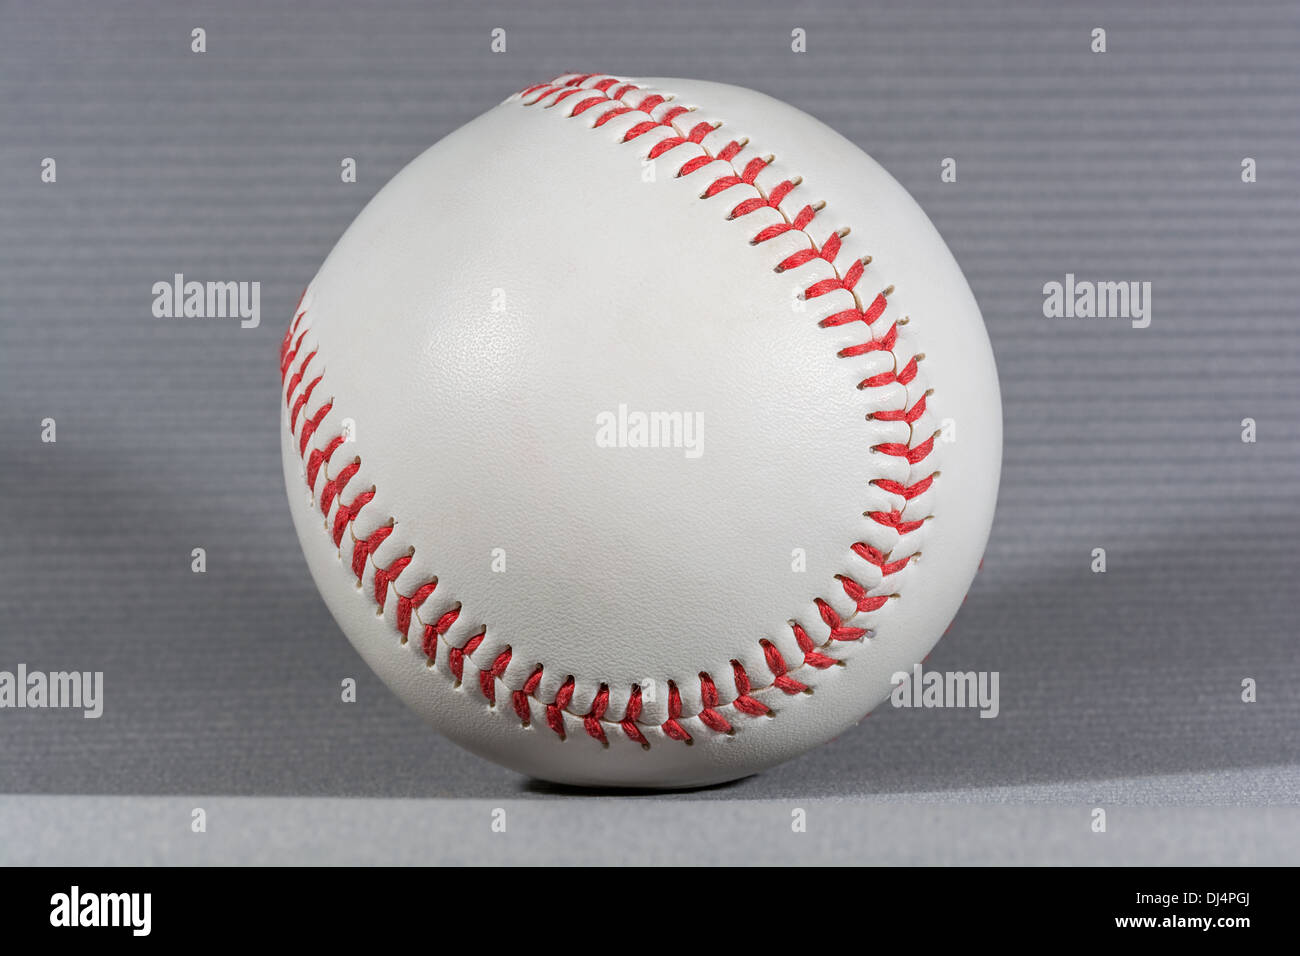 Bola de béisbol sobre fondo gris, disparo horizontal y enfoque con poca iluminación creativa Foto de stock